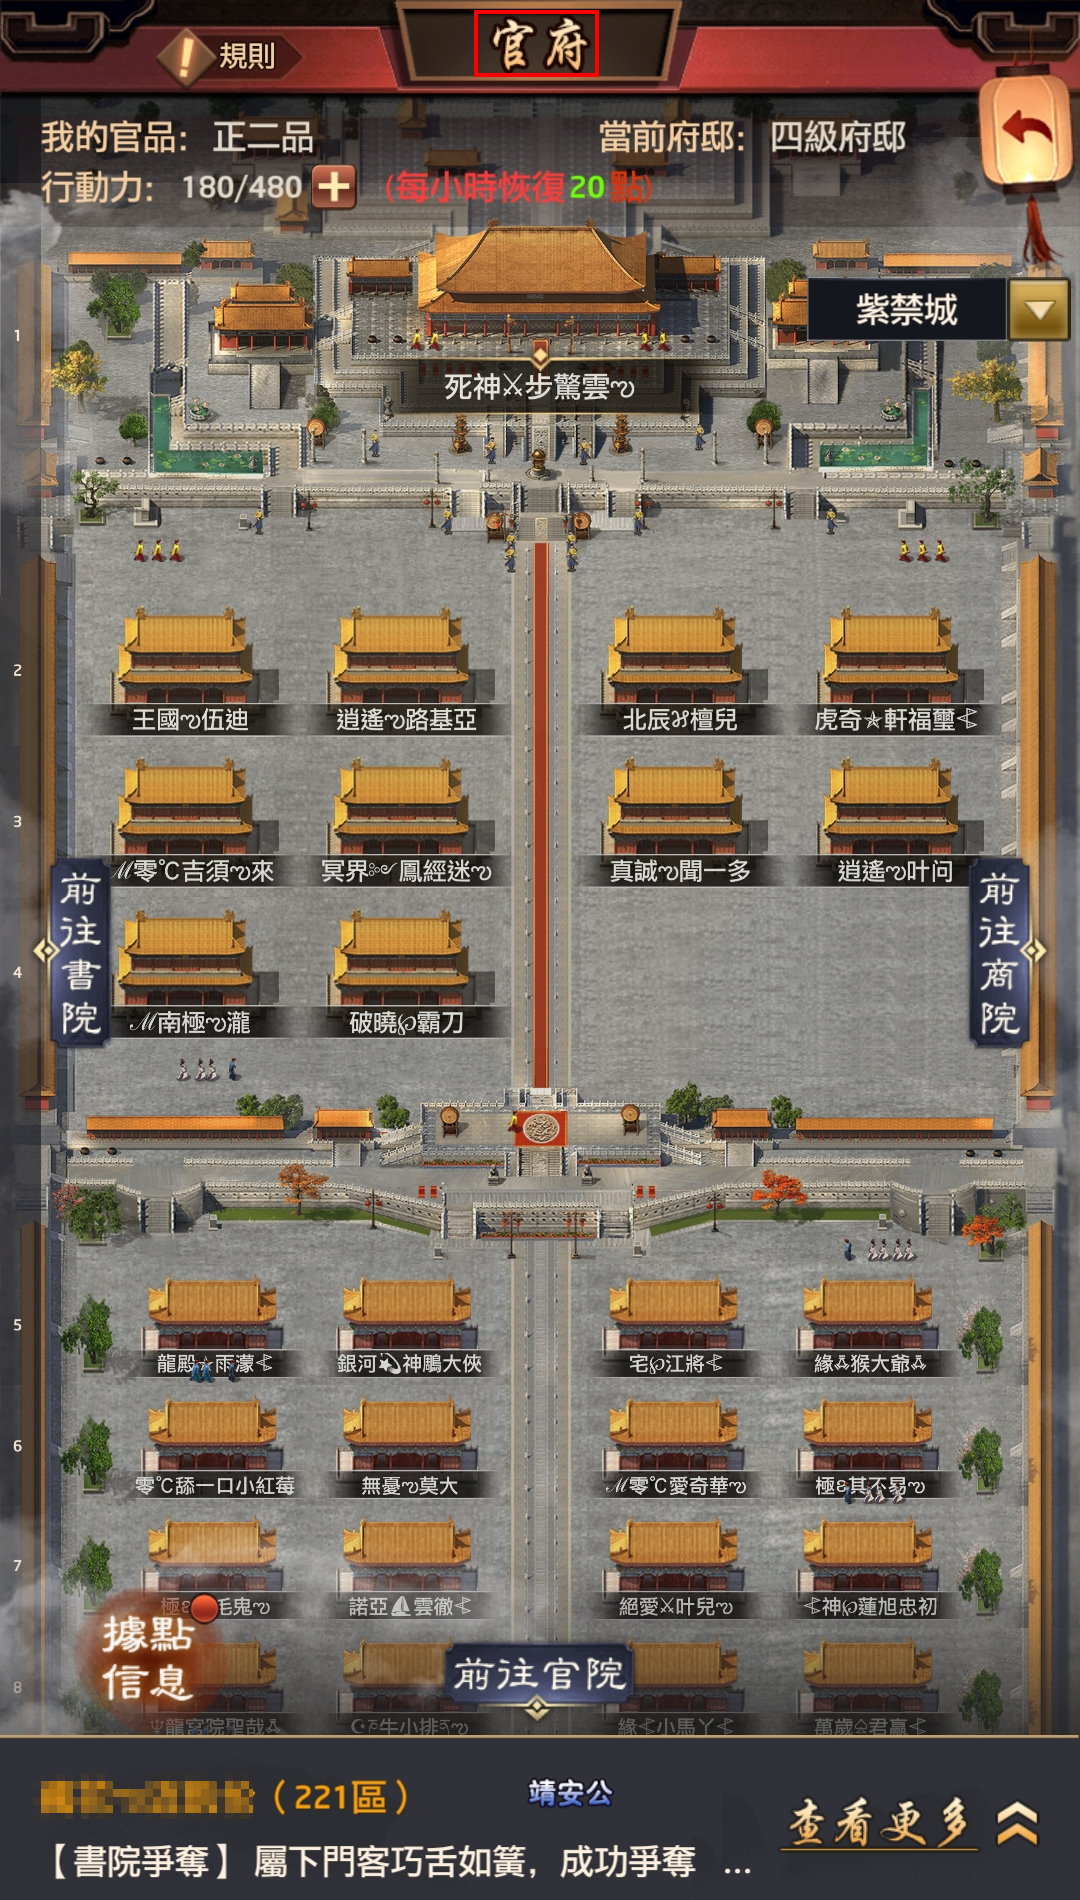 手機遊戲, 叫我官老爺, 版本更新, V4.0版, 京城改官府